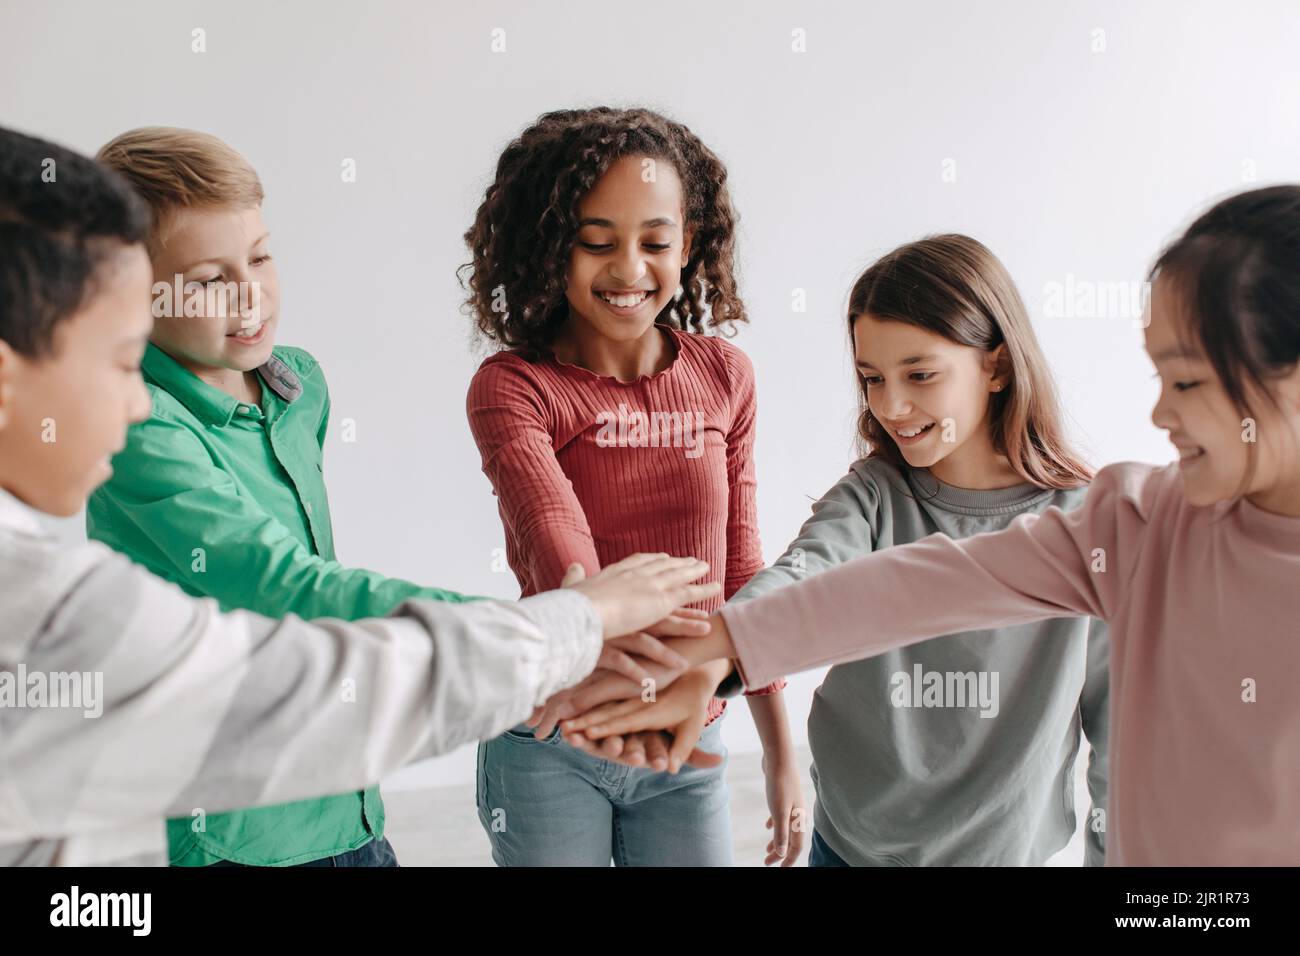 Bambini allegri mettendo le mani insieme in piedi in cerchio in posa al coperto Foto Stock